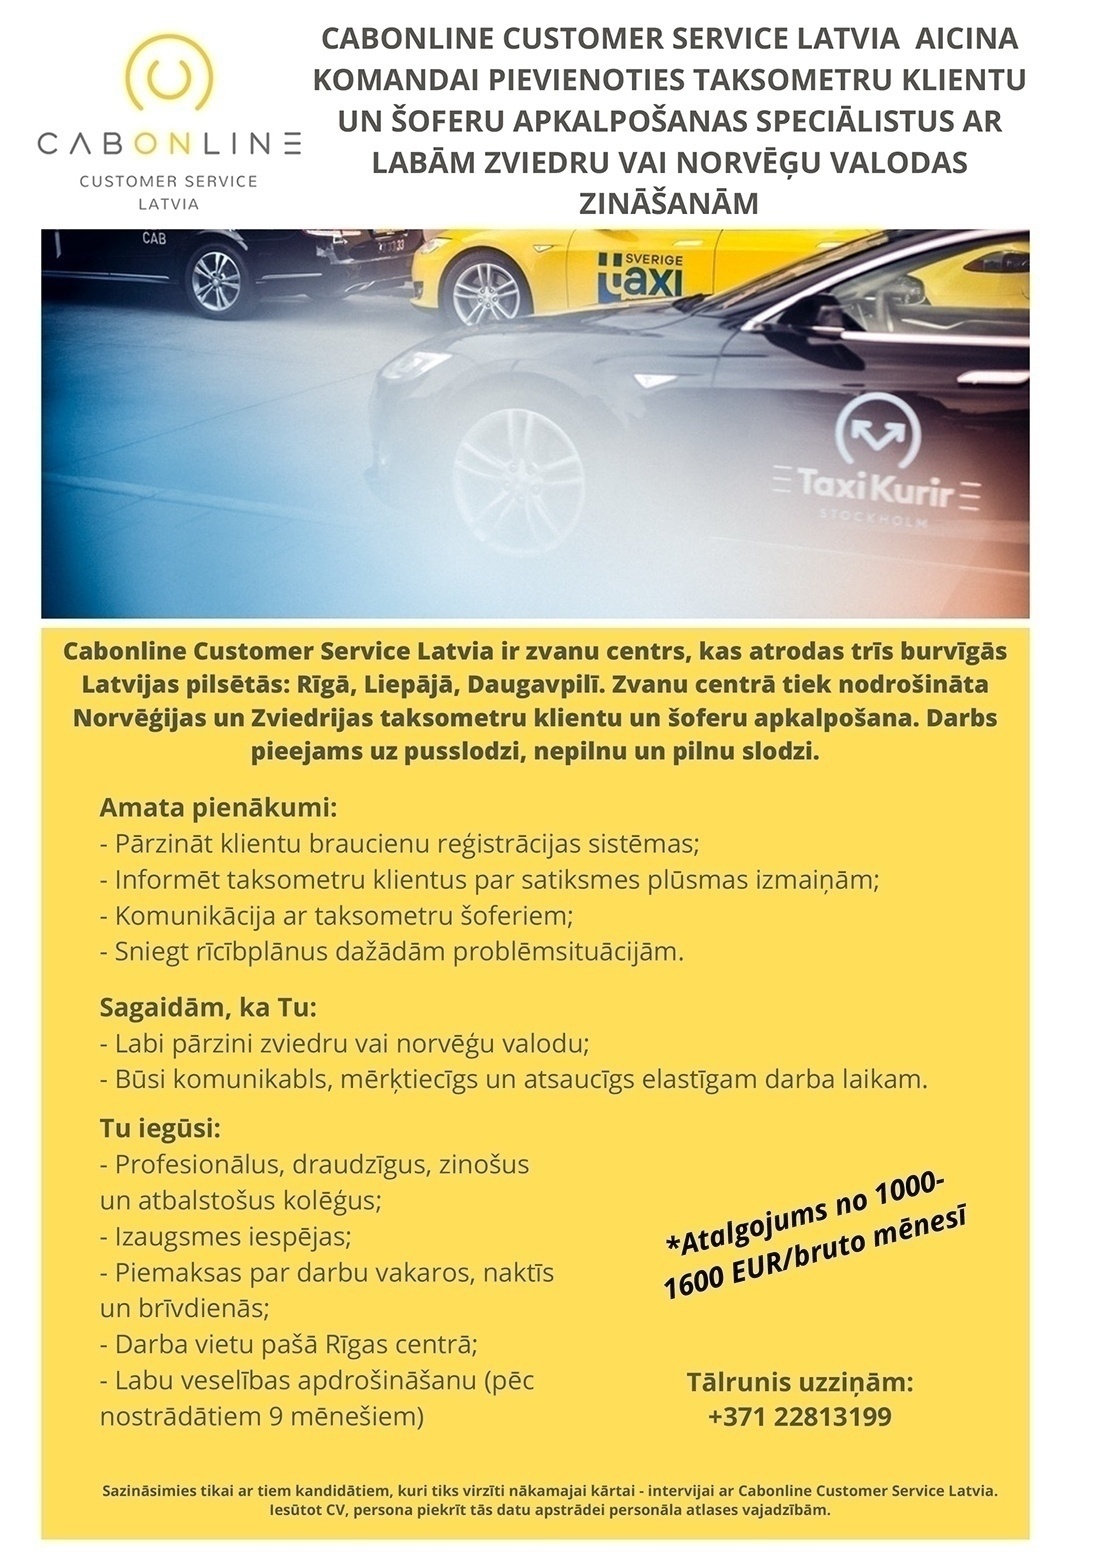 Cabonline Customer Service Latvia, SIA Klientu apkalpošanas speciālists/-e ar zviedru vai norvēģu valodas zināšanām